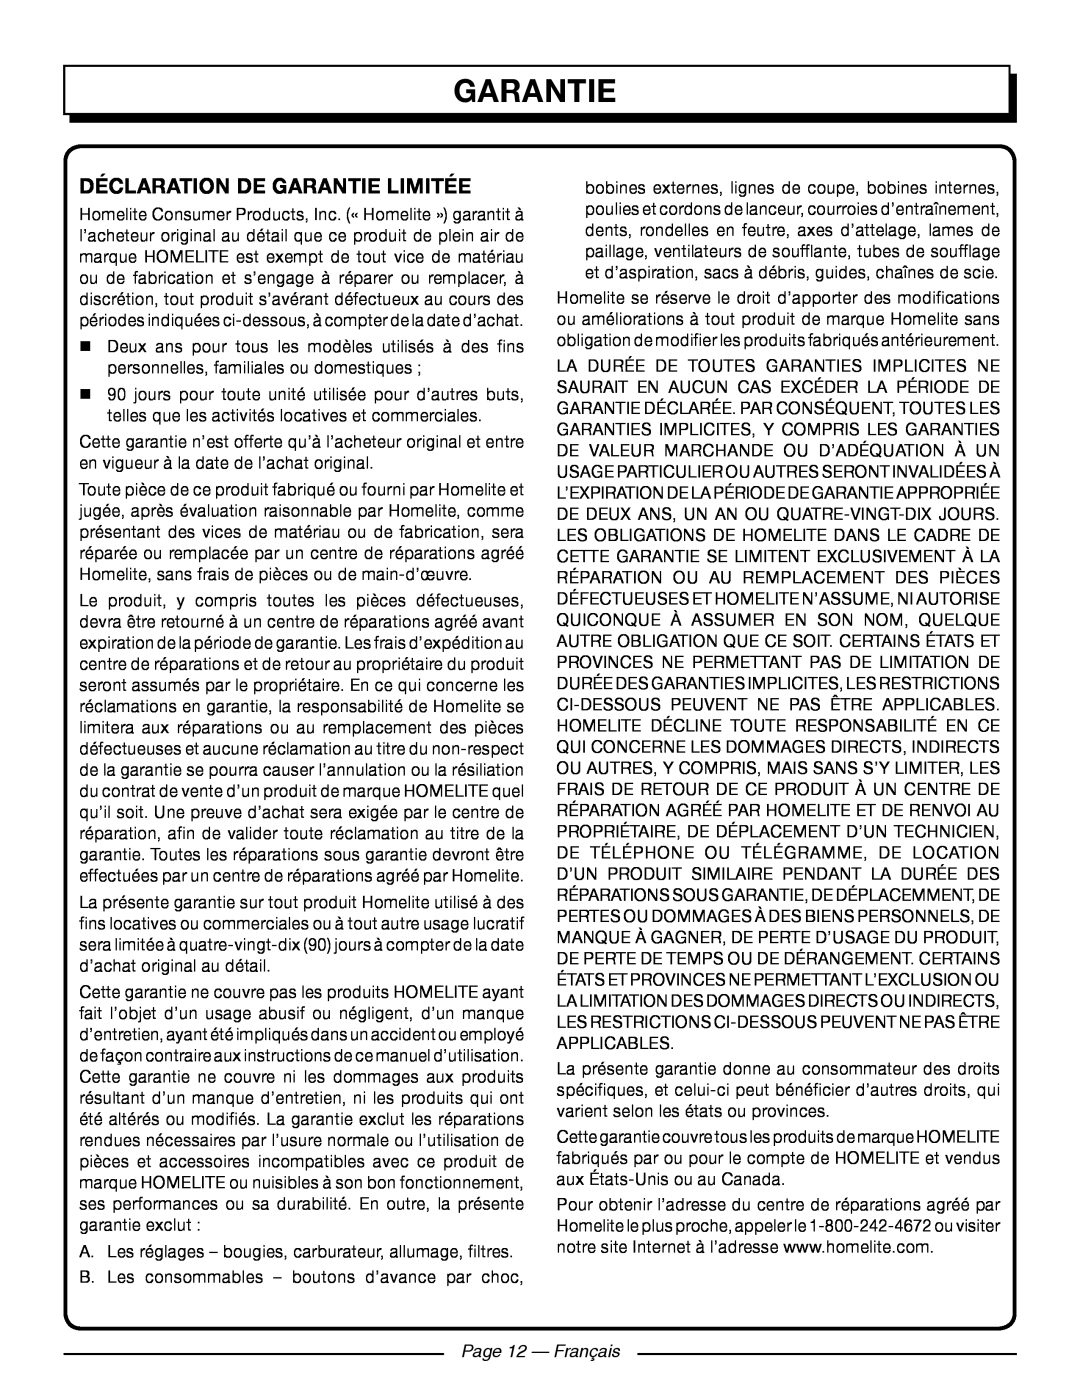 Homelite UT09521 manuel dutilisation Déclaration De Garantie Limitée, Page 12 - Français 